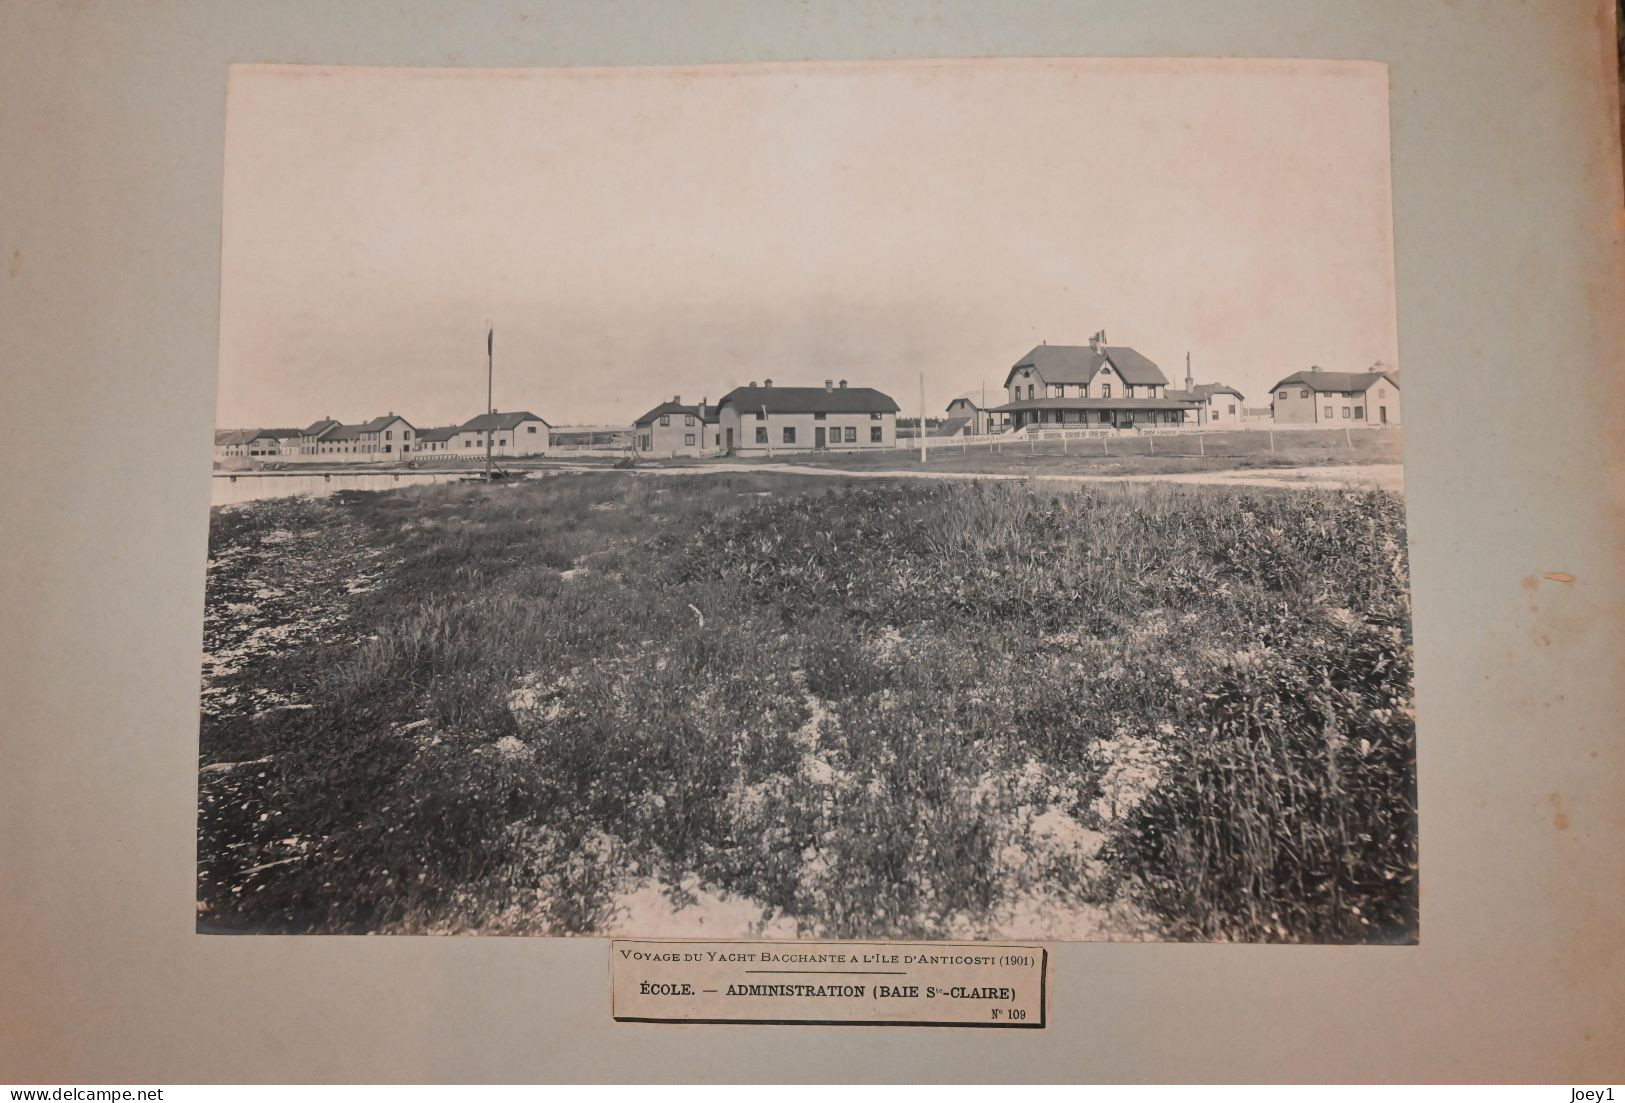 Anticosti ,l'Album photo qui raconte l histoire de l'ile d ' Anticosti après l achat de l ile par Henri Menier en 1895